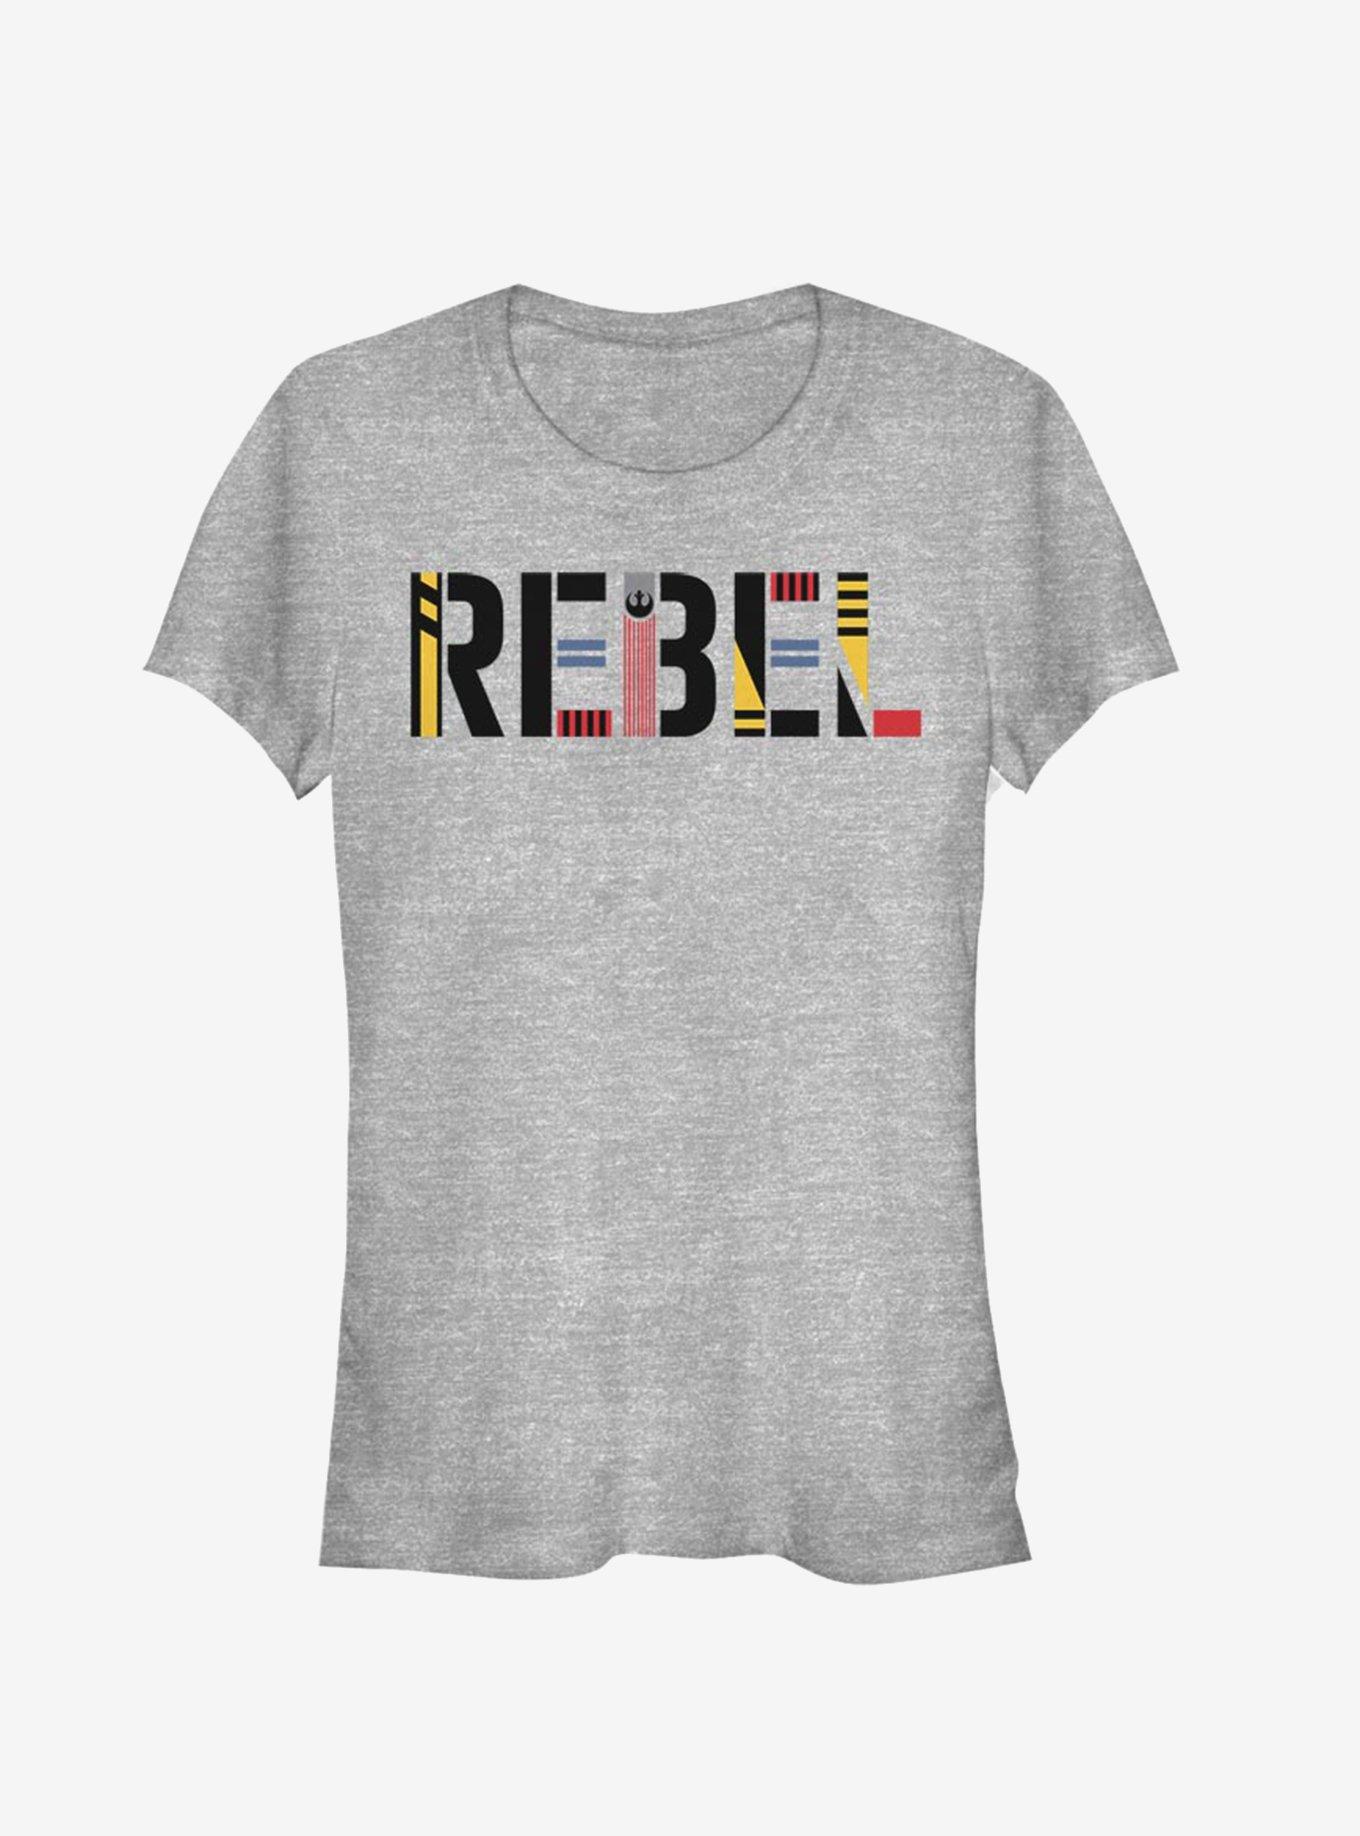 Star Wars Episode IX The Rise Of Skywalker Rebel Simple Girls T-Shirt, ATH HTR, hi-res